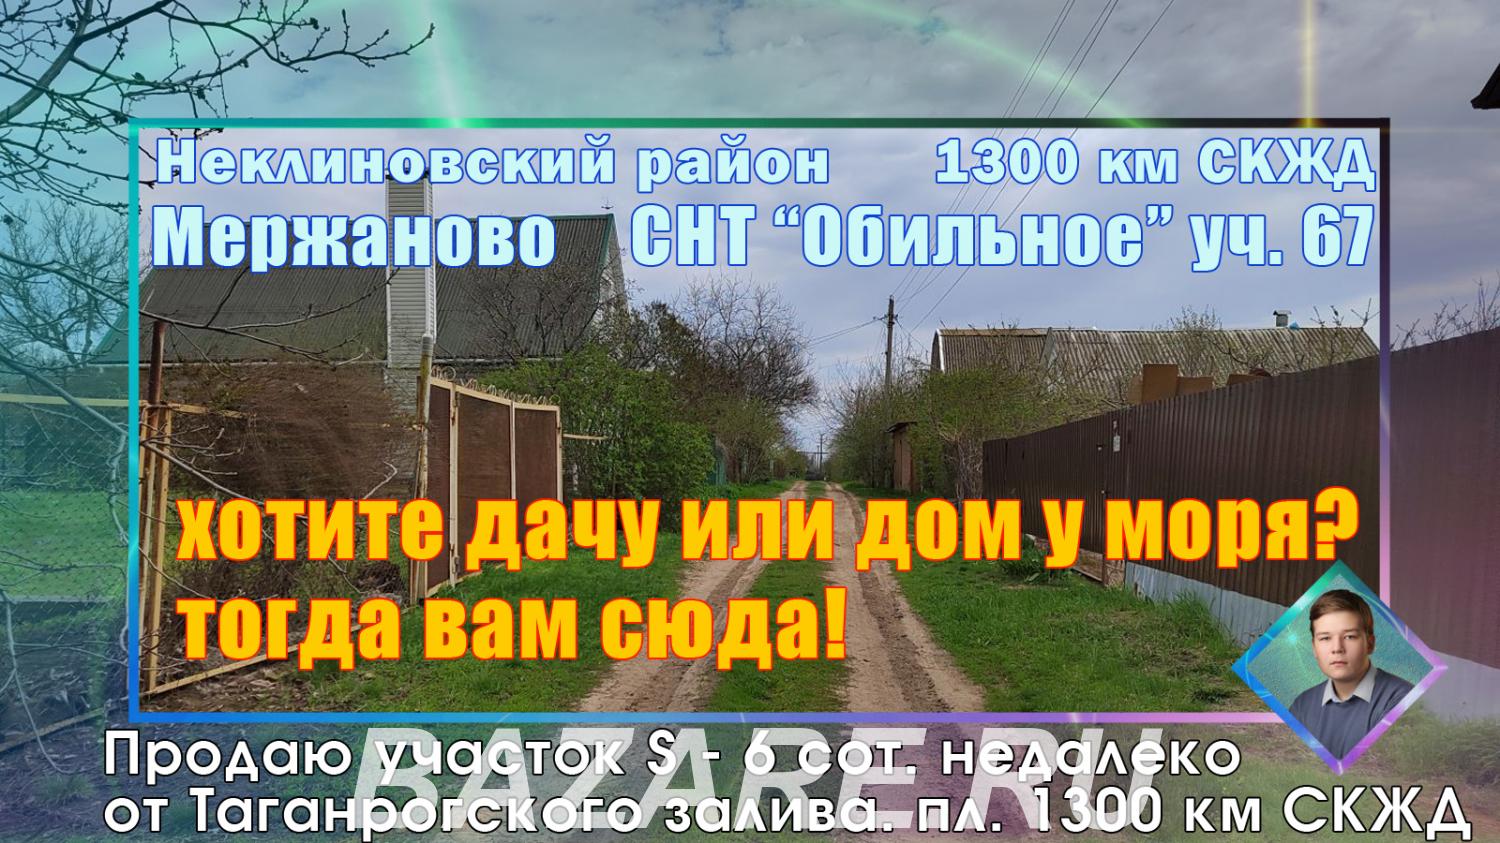 Продаю участок в Мержаново 1300 км скжд СНТ Обильное ...